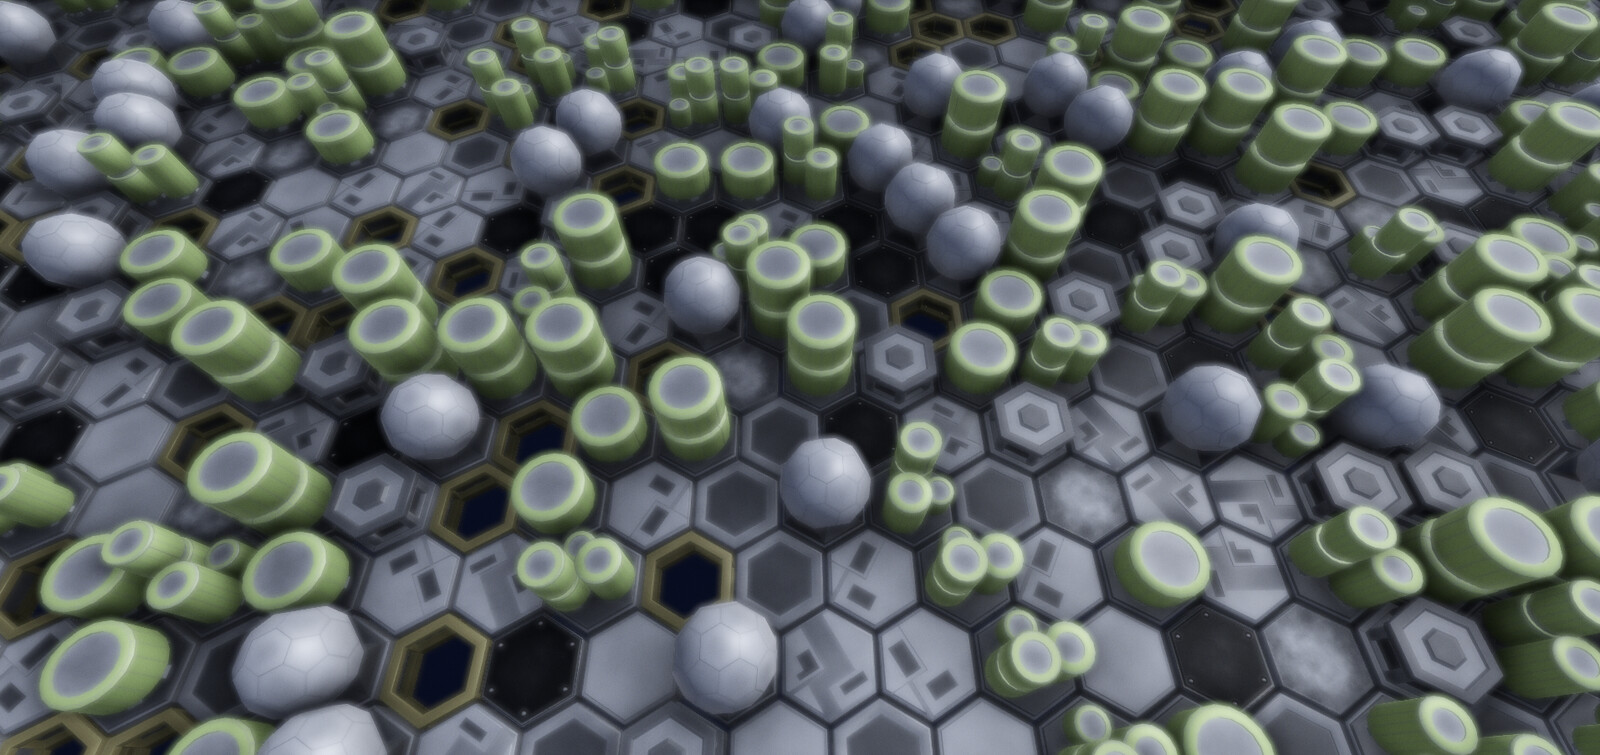 Hexagonal tile set for a robotic/electronic theme.